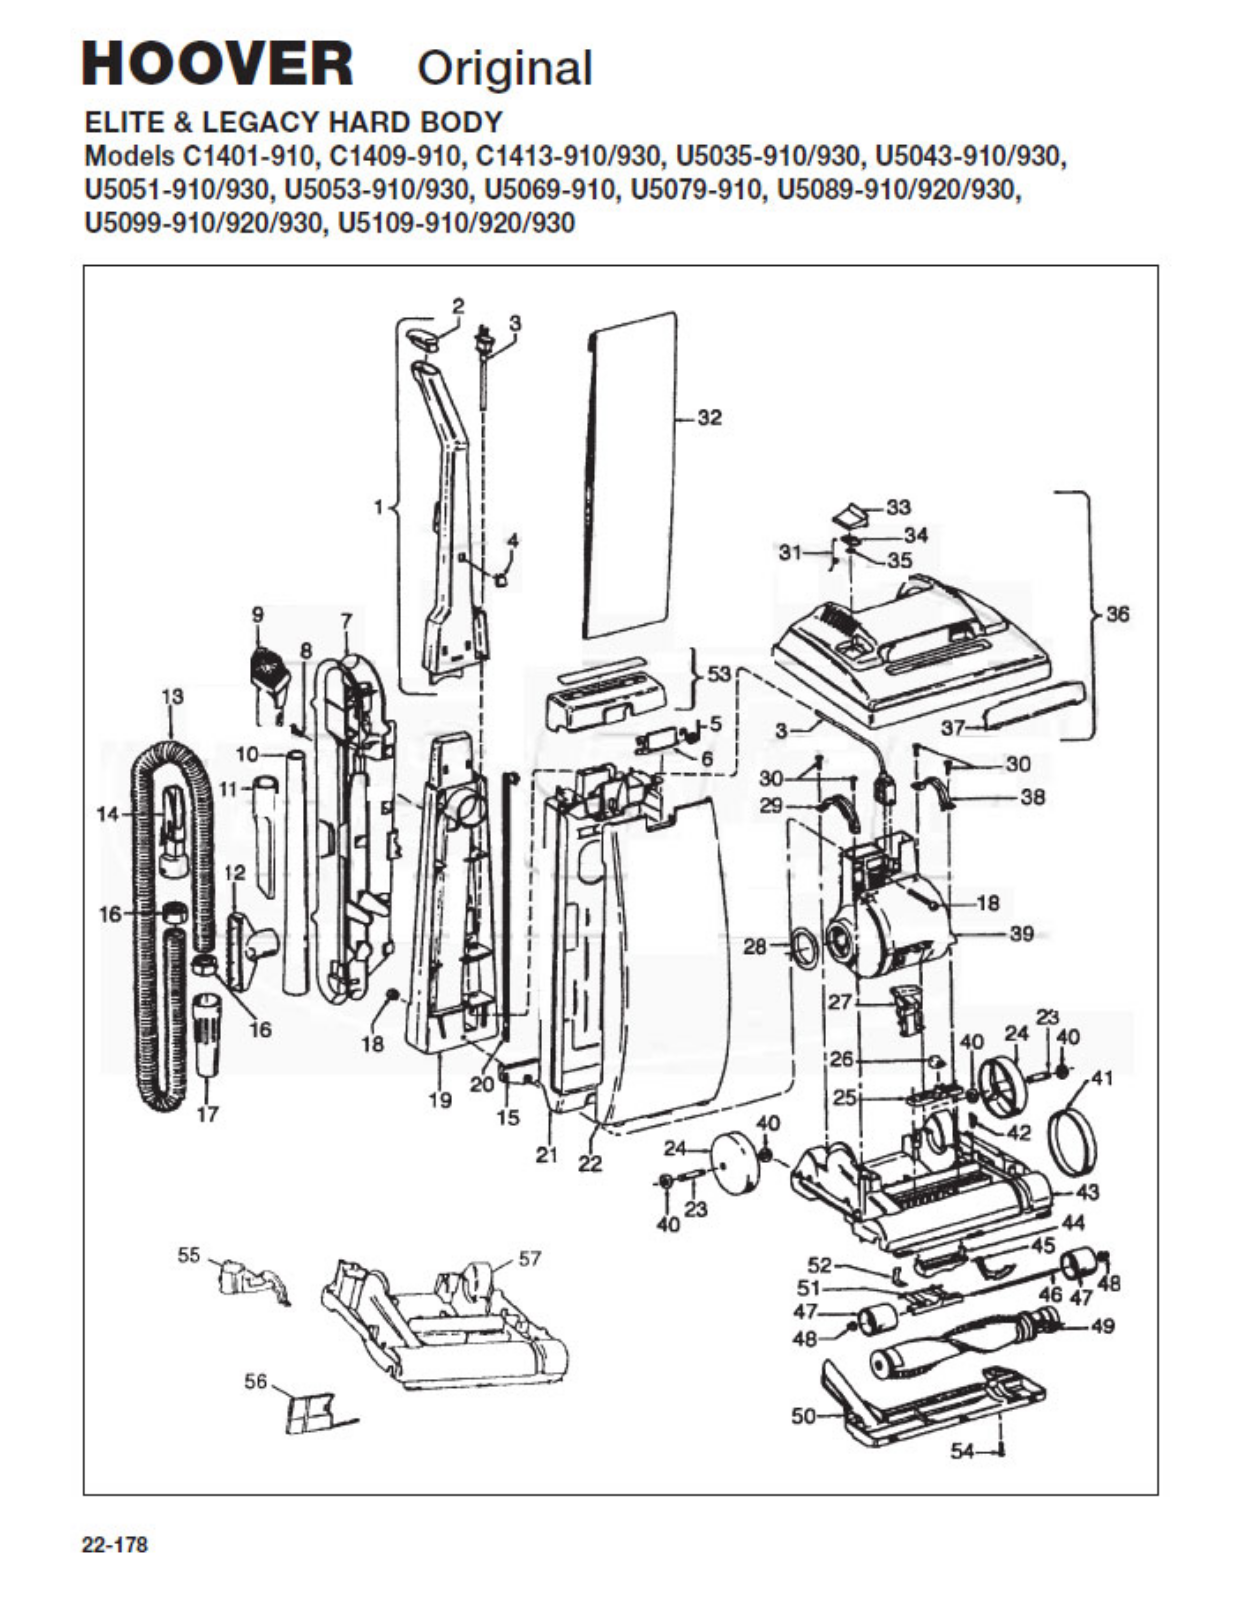 Hoover C1413-930, C1413-910, C1409-910, C1401-910 Owner's Manual